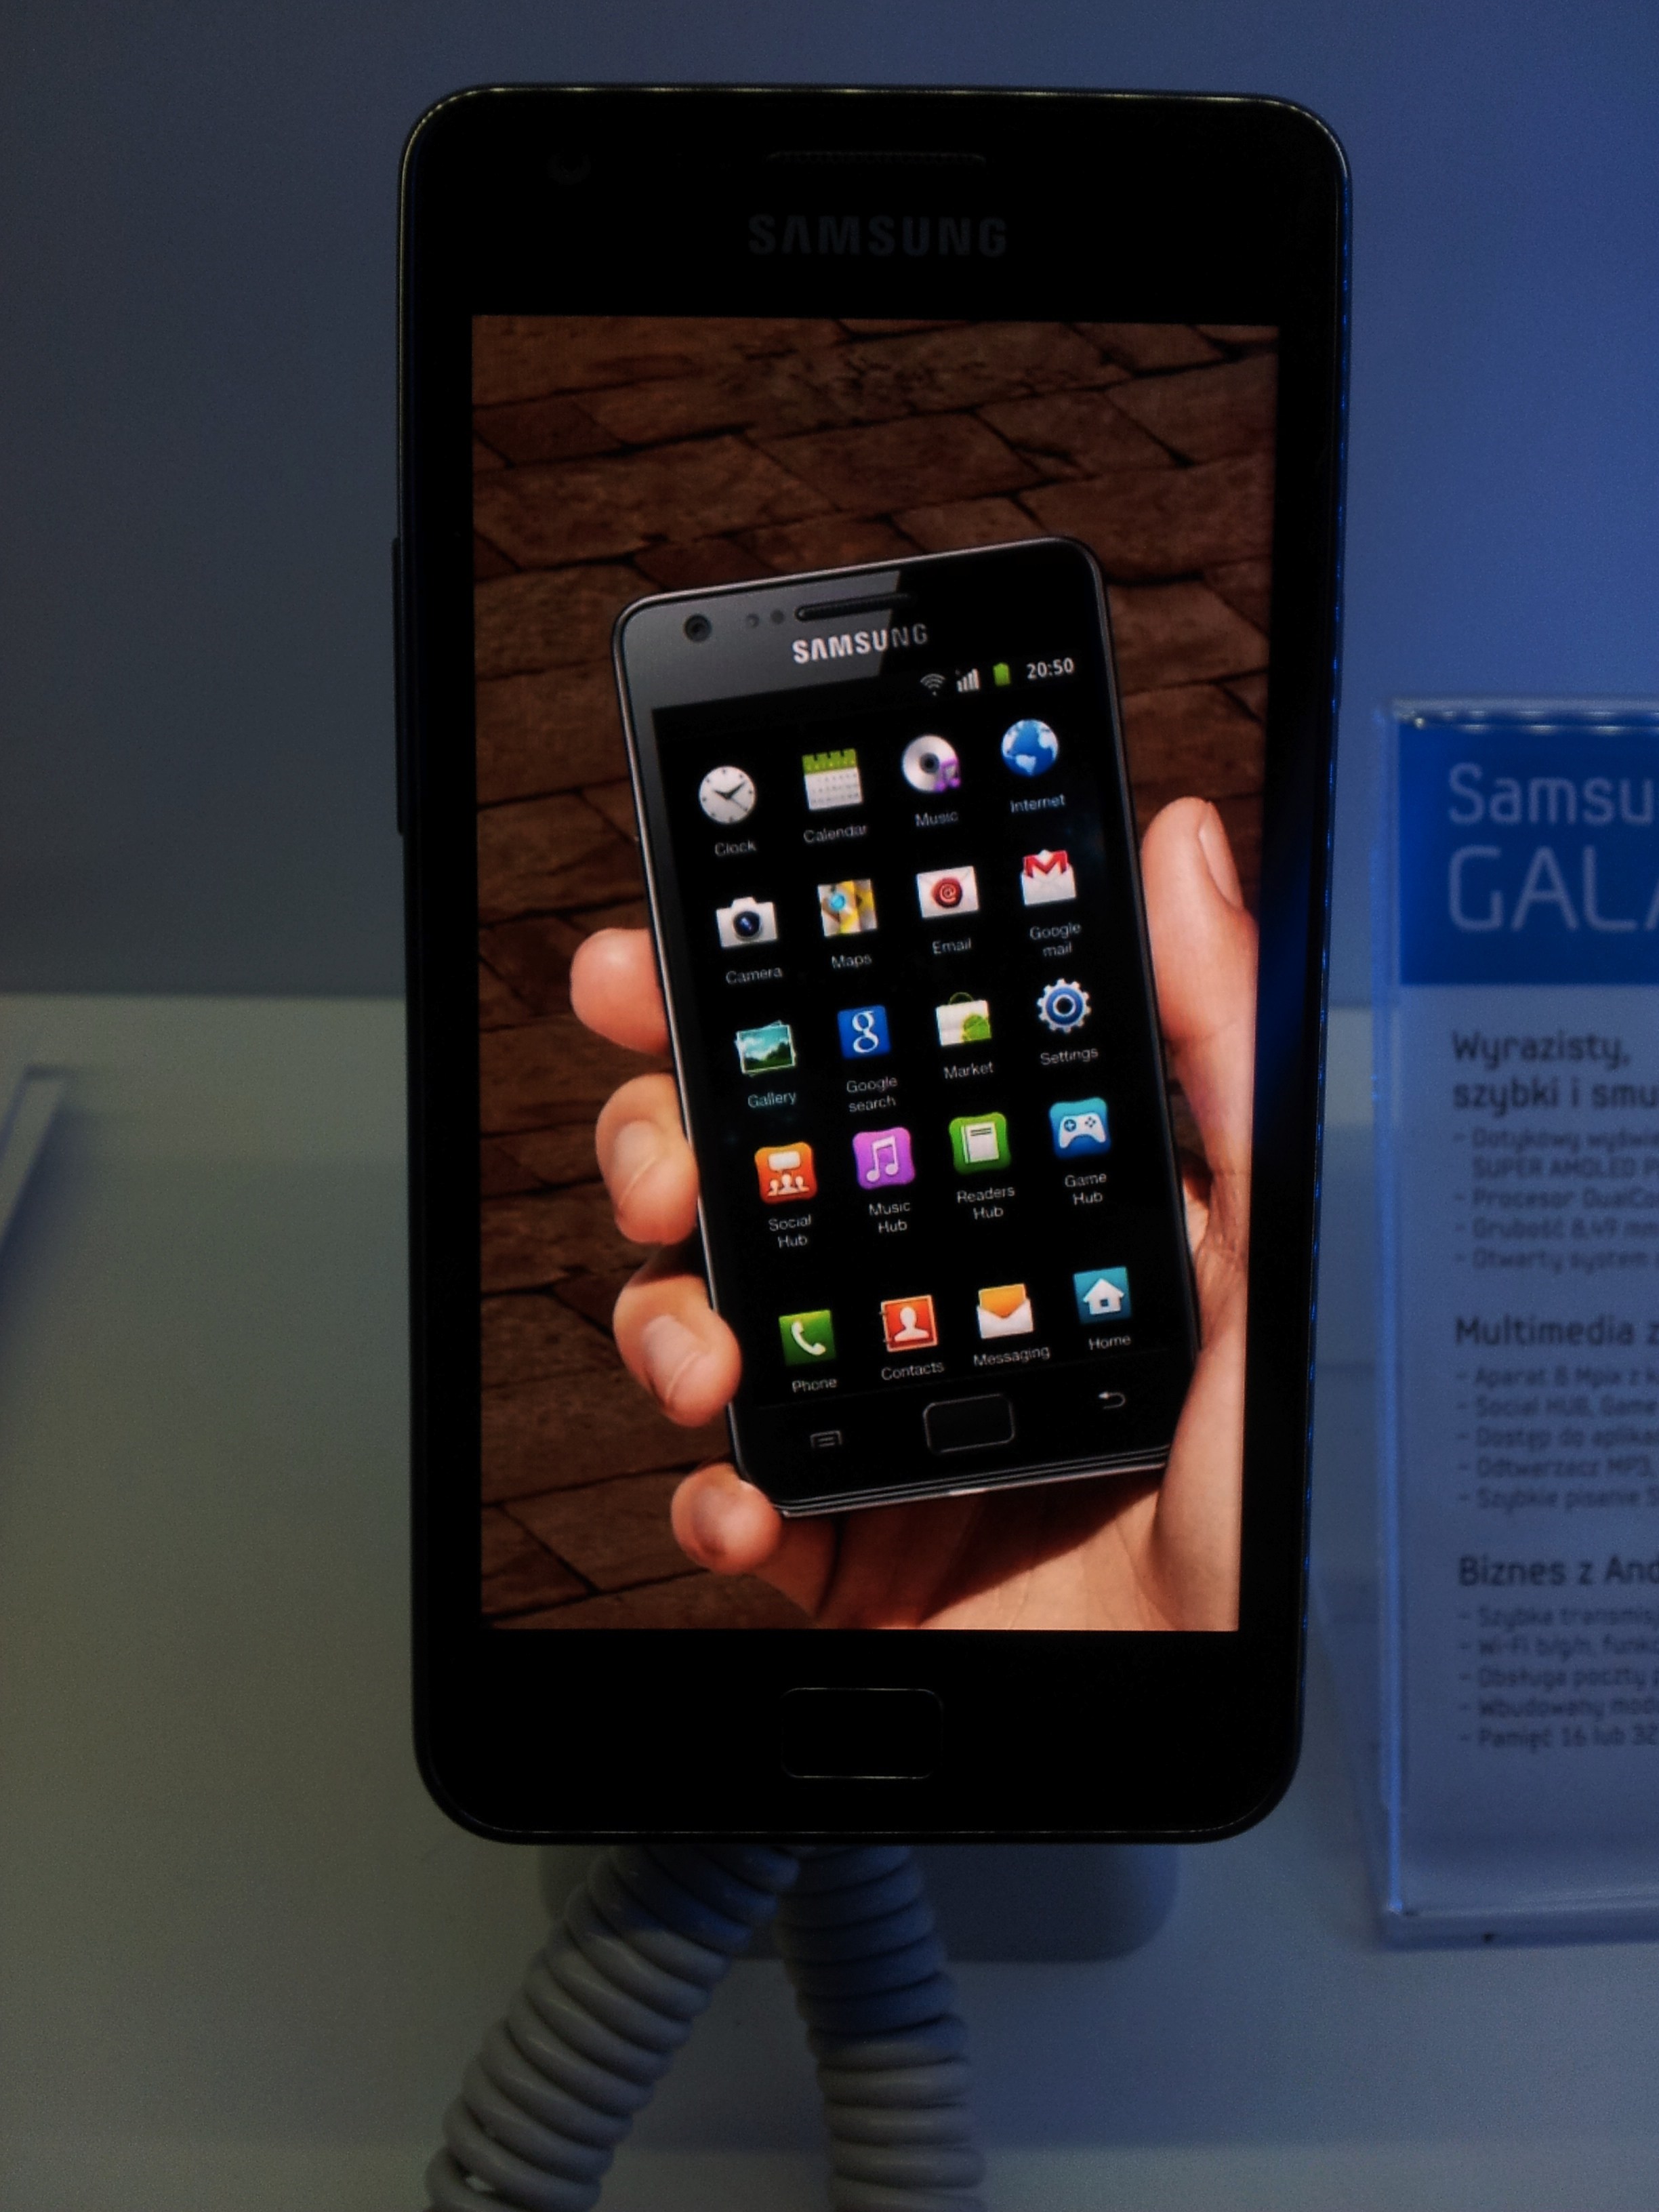 Pętla, czyli Galaxy S II robi zdjęcie Galaxy S II, wyświetlającego Galaxy S II